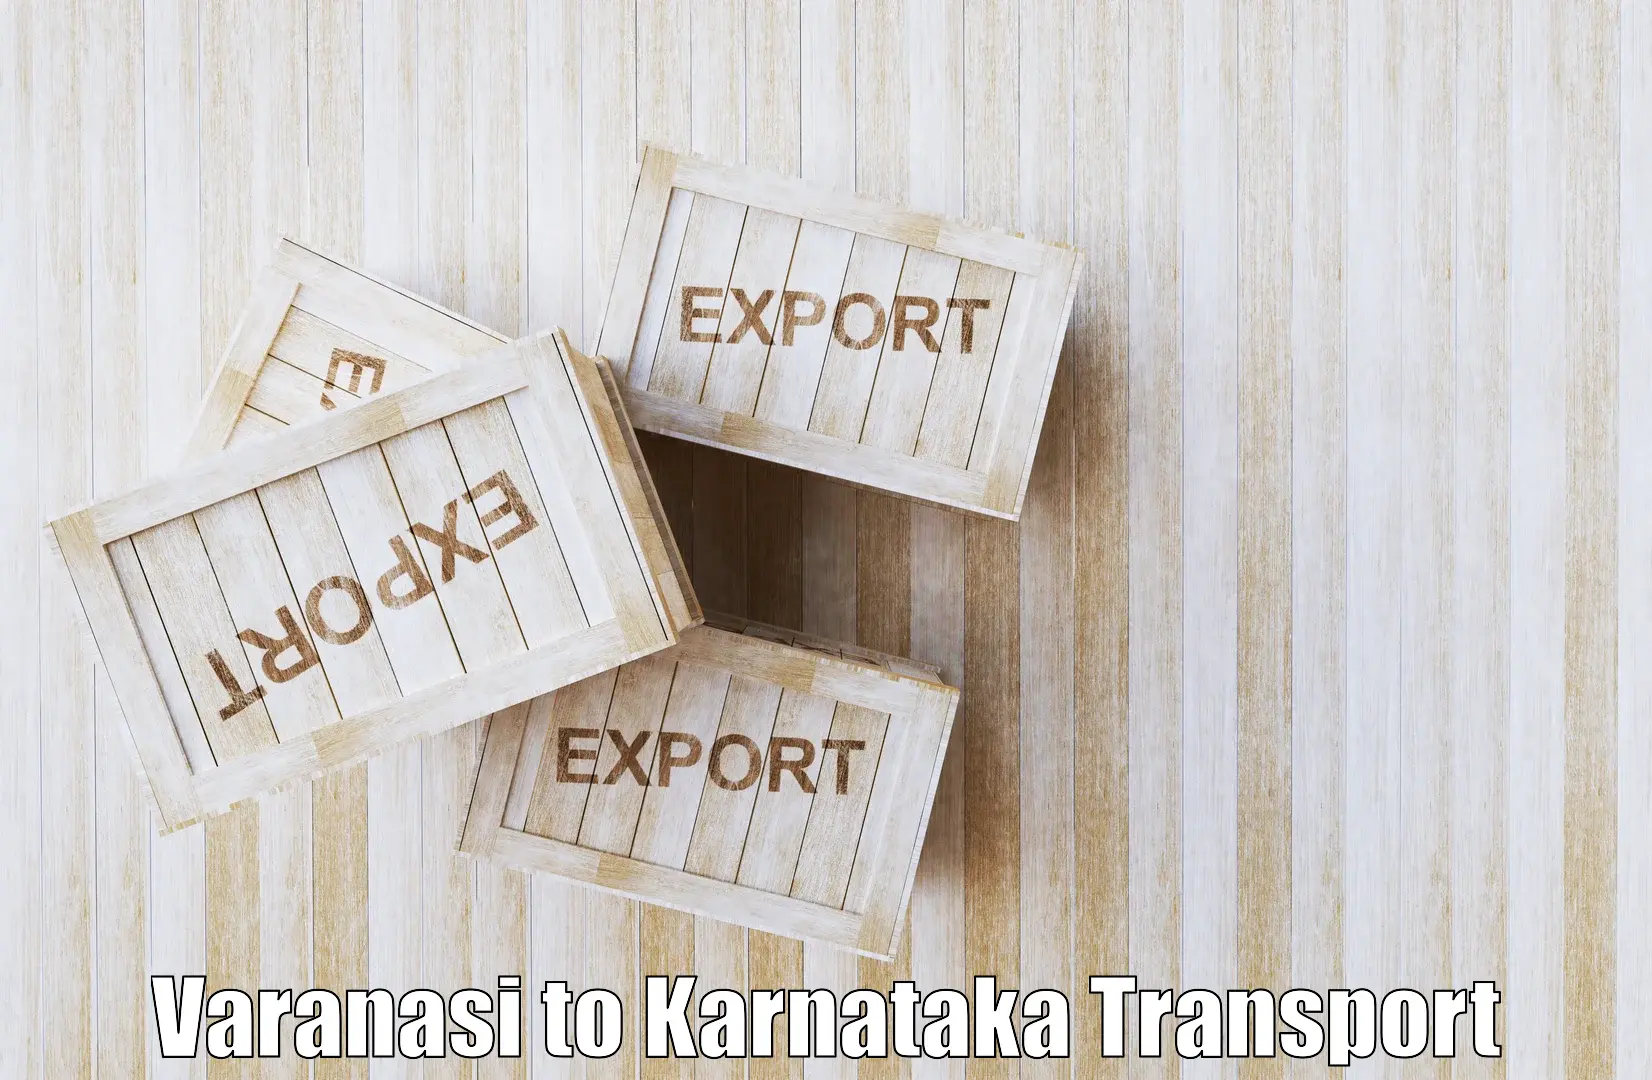 Cargo transportation services Varanasi to Hosanagar